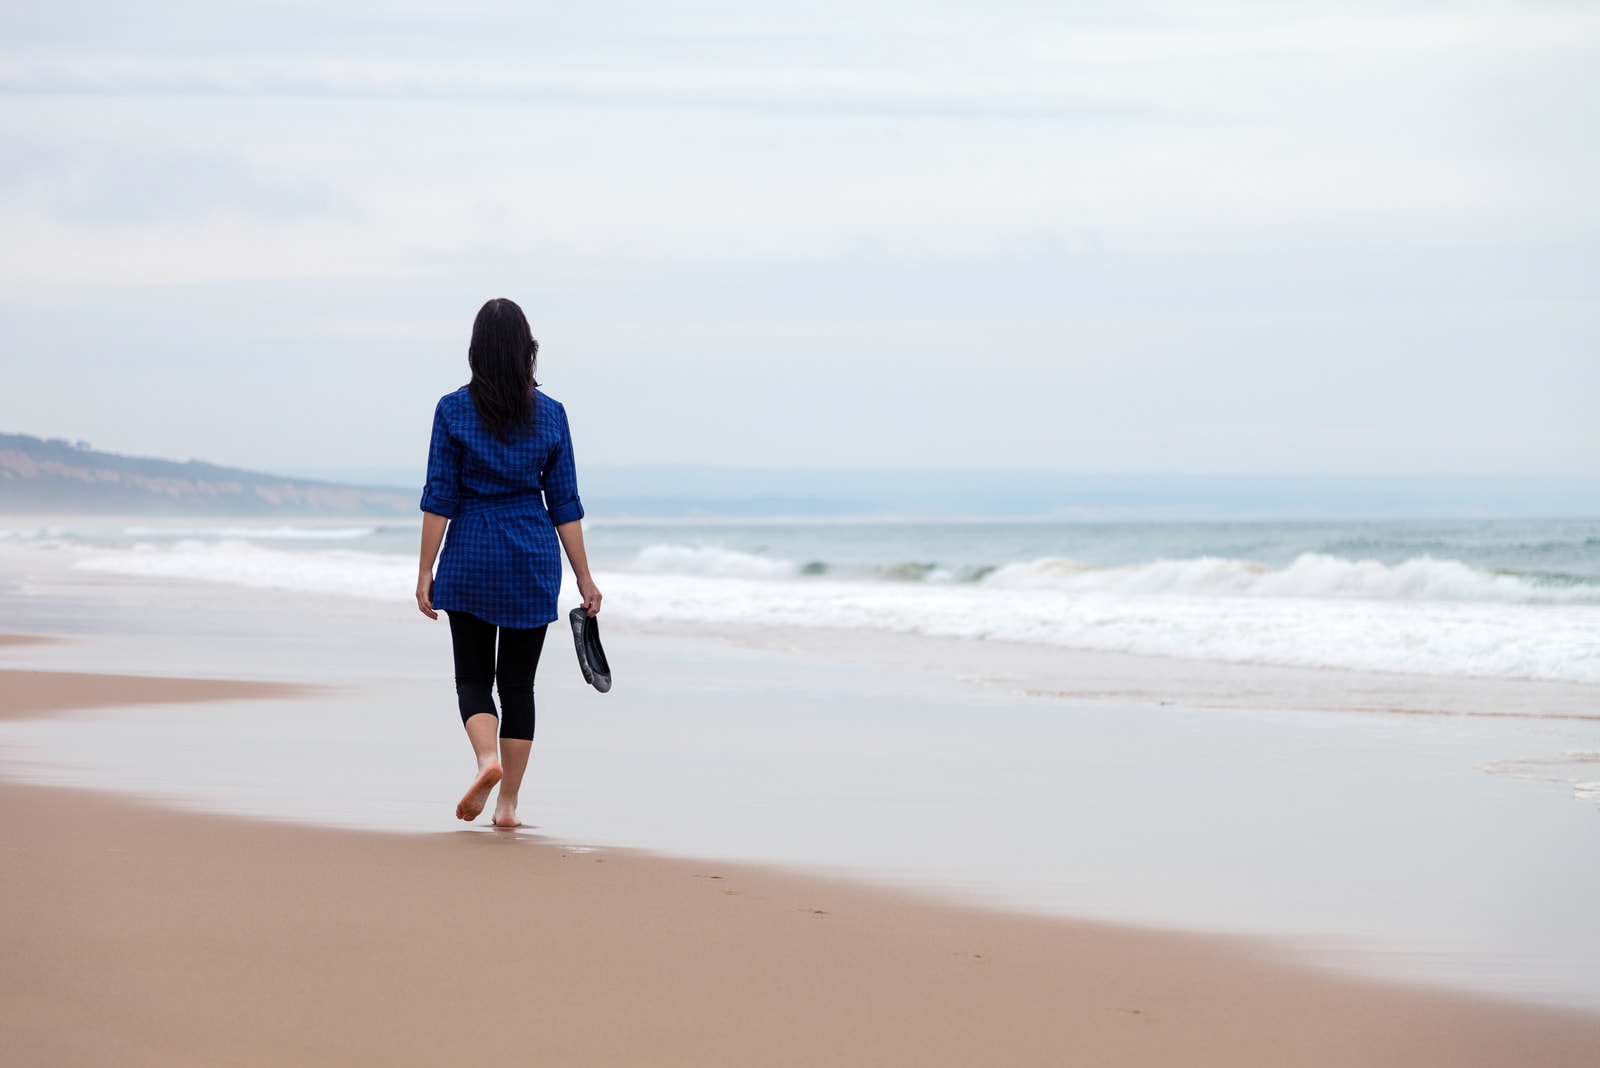 donna che si allontana da sola in una spiaggia deserta